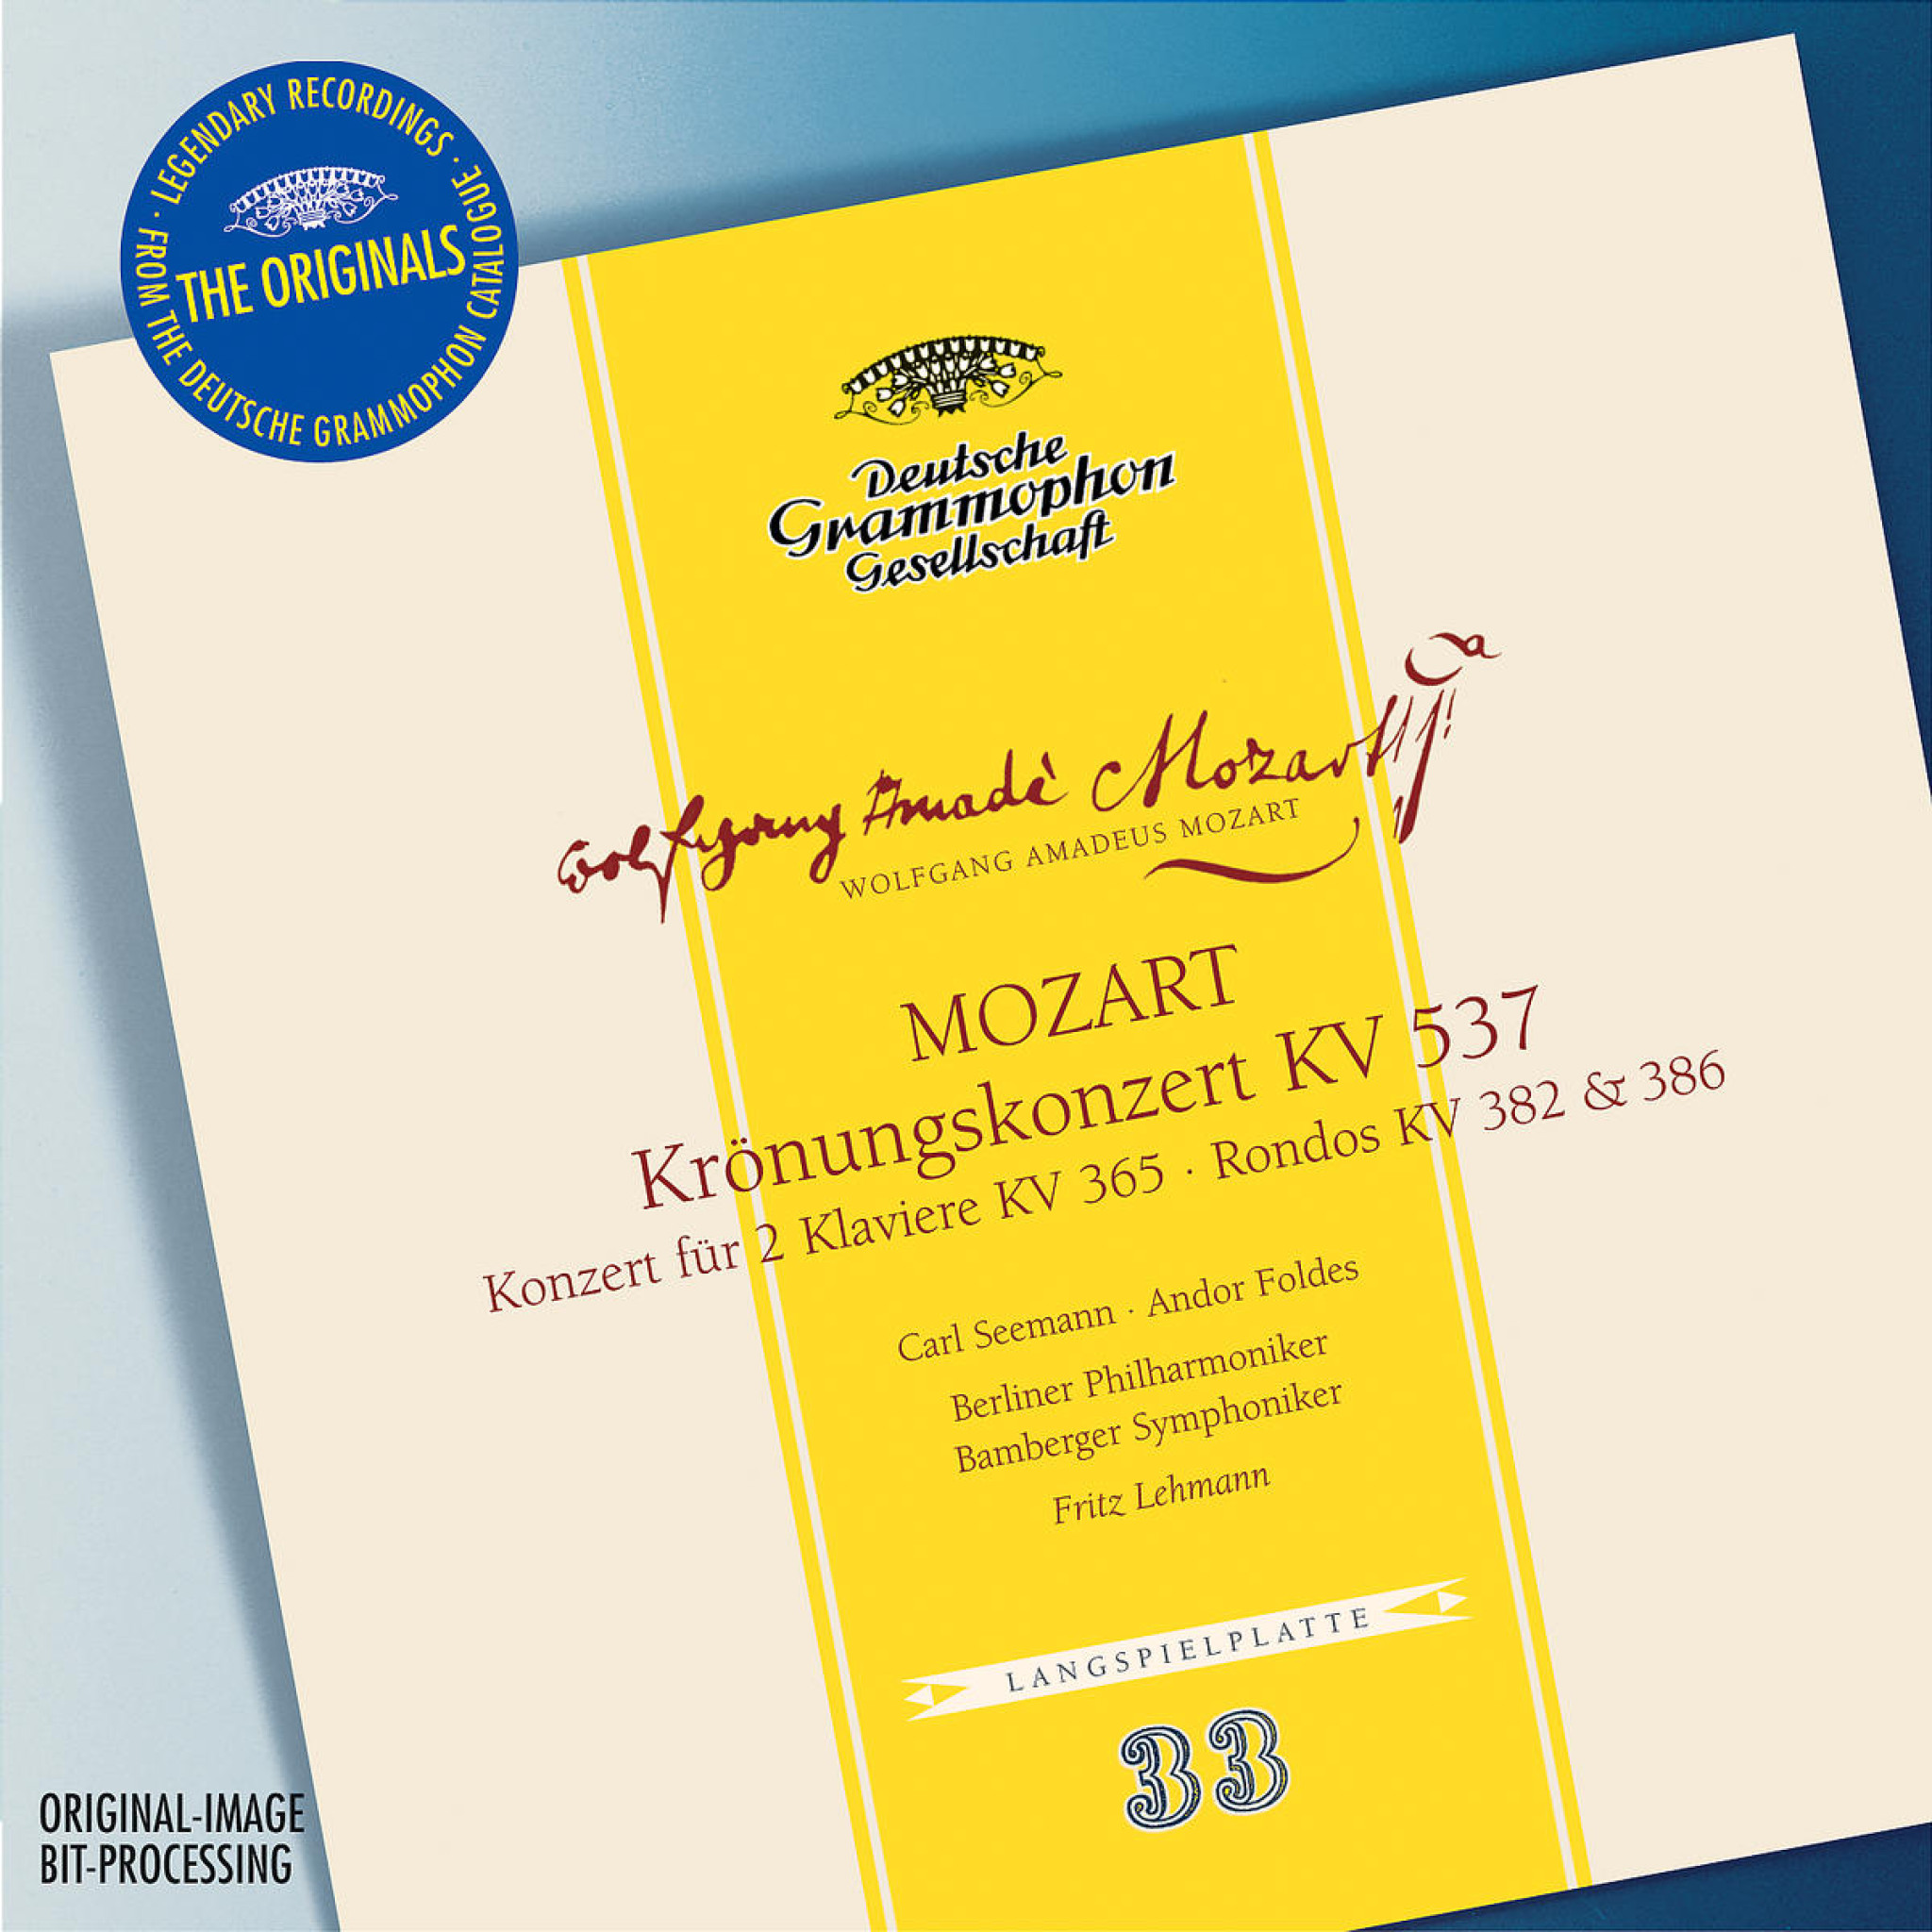 Mozart: Coronation concerto K537, Concerto for 2 Pianos K365, Rondos K382 & 386 0028947461124